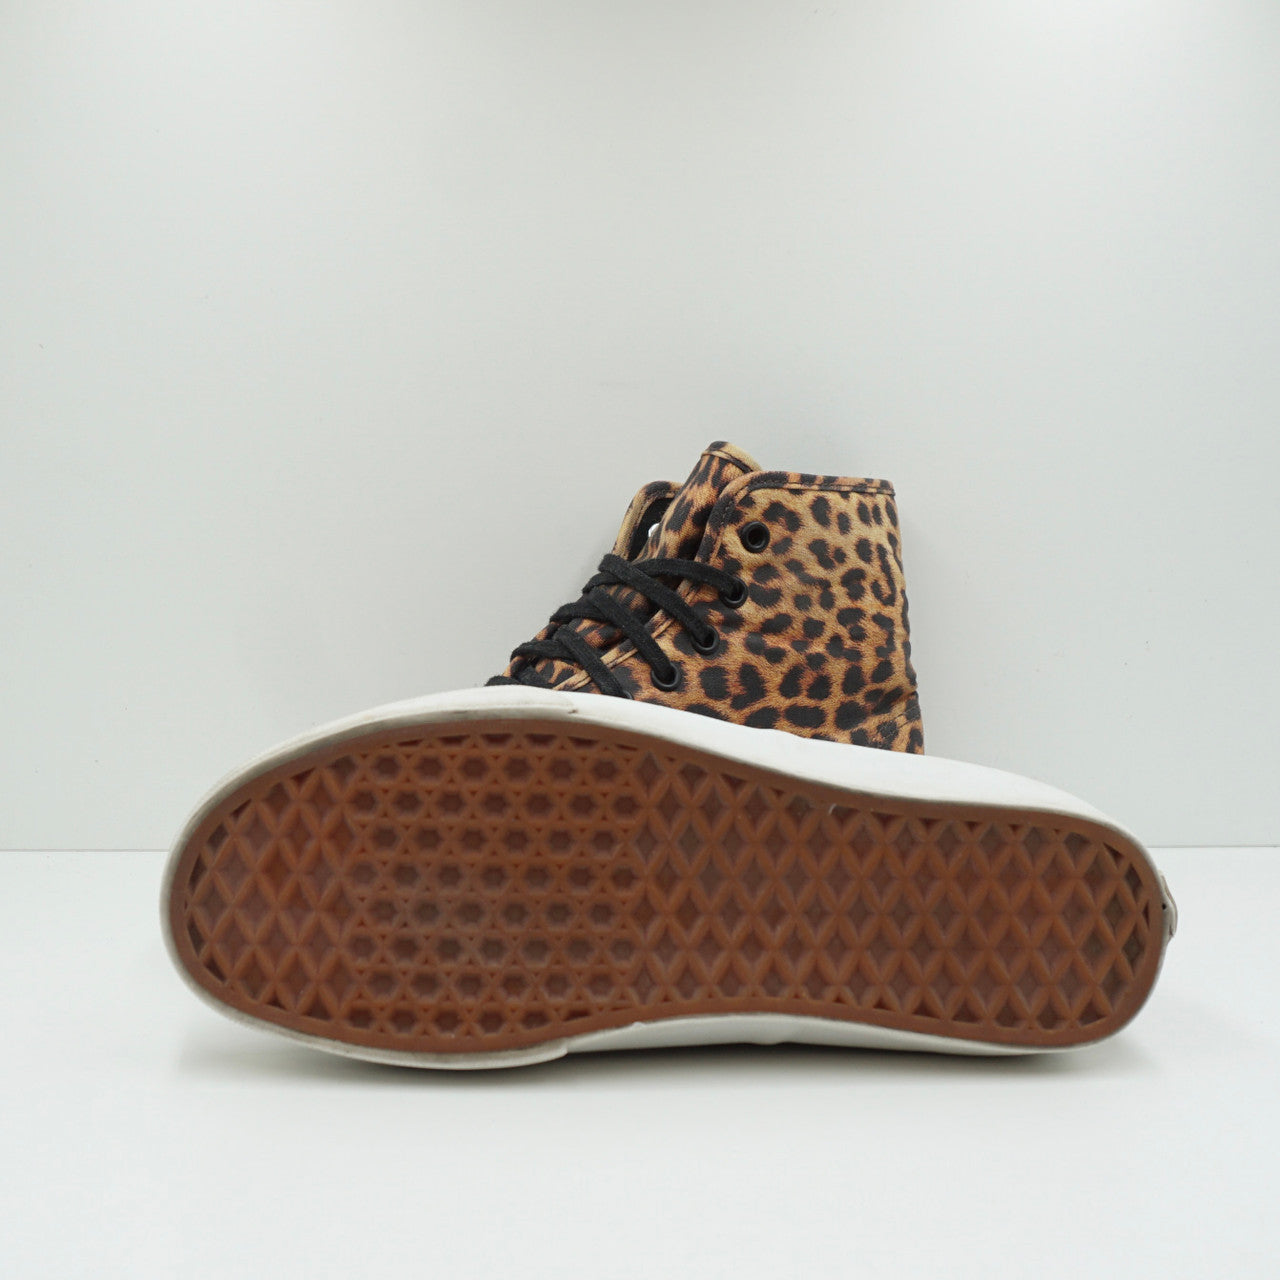 Vans Authentic High Leopard Pack (2013) (W)